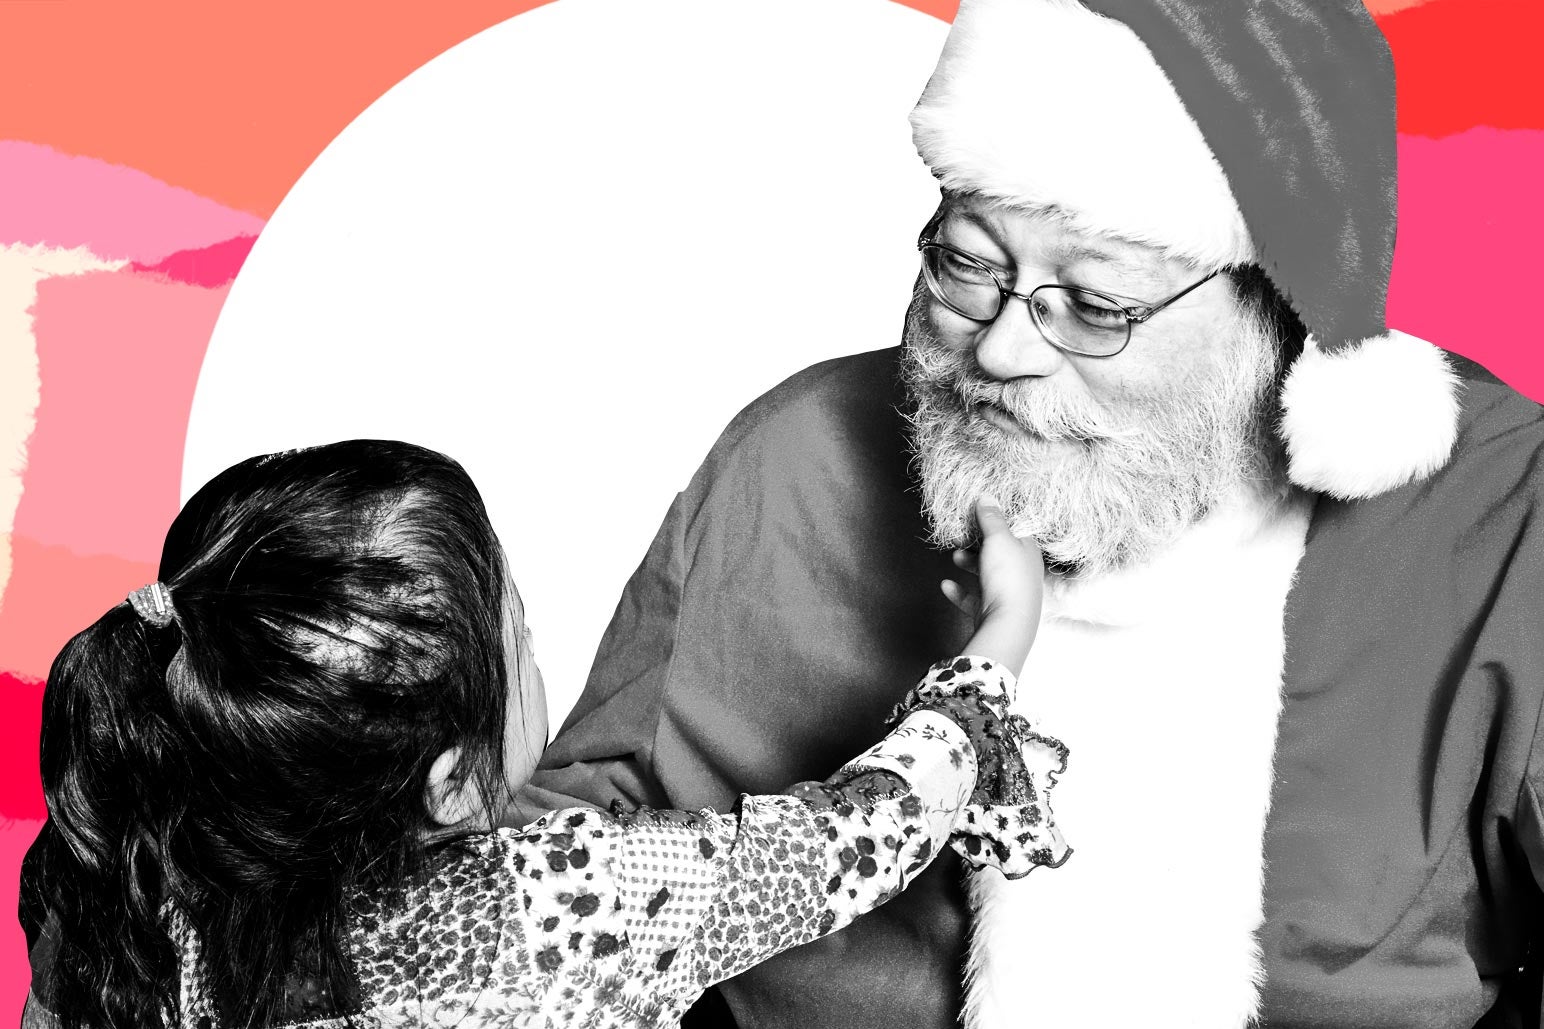 A little girl tugs on Santa's beard.